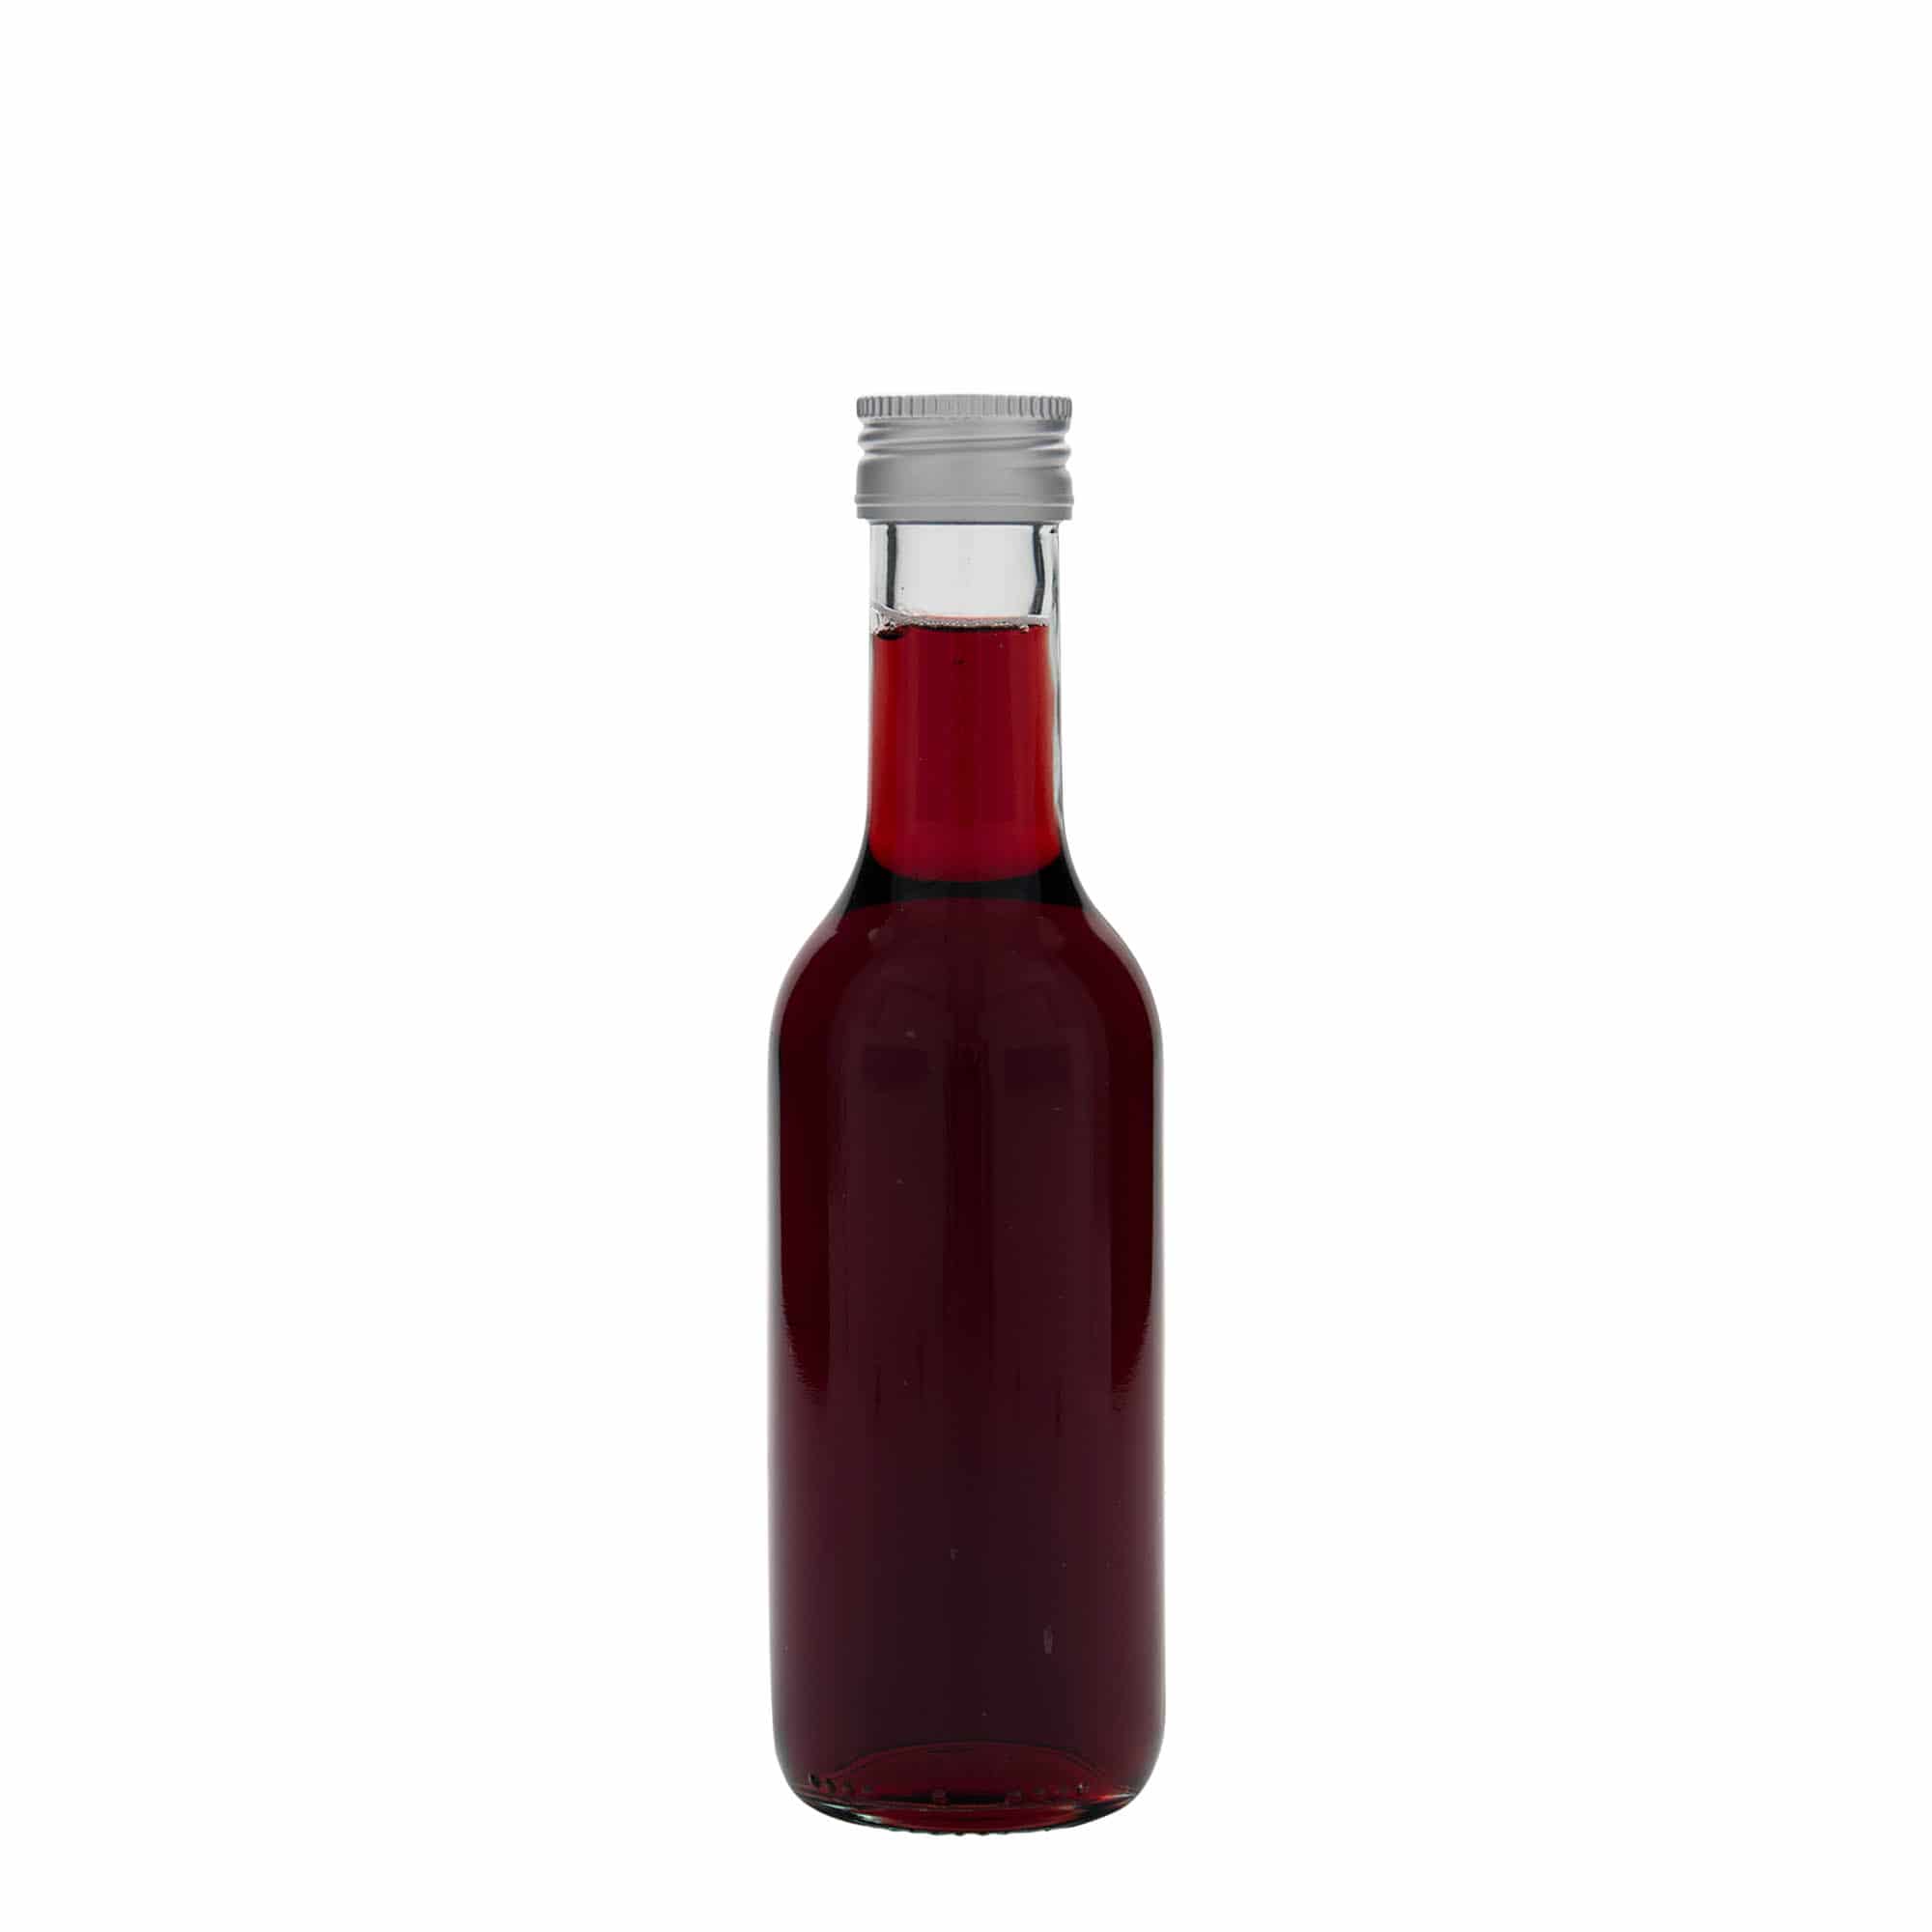 187 ml glass bottle 'Bordeaux Airline', closure: PP 28